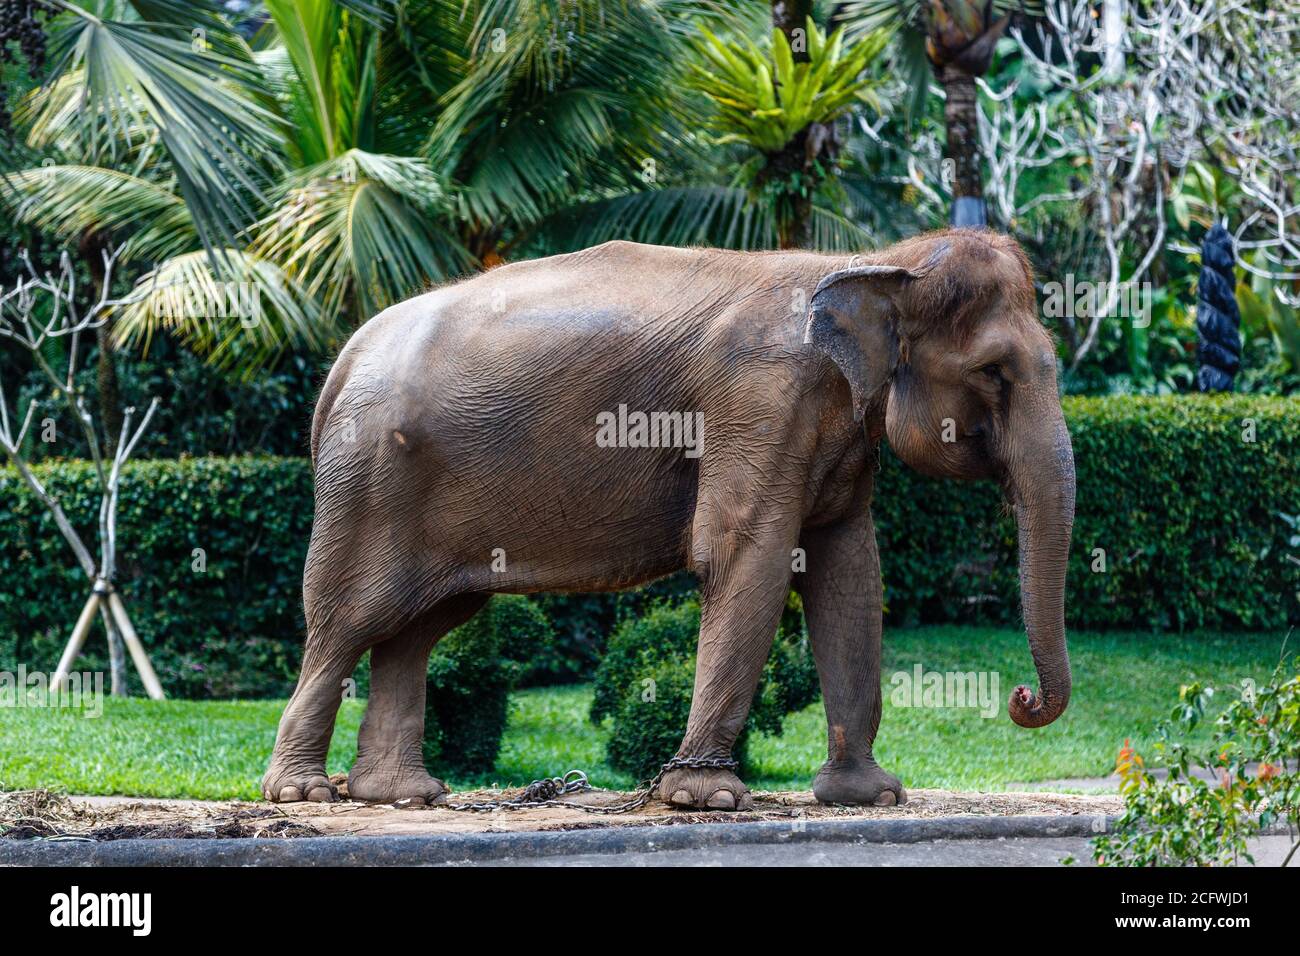 Éléphant de Sumatran en danger critique dans un parc. Bali, Indonésie Banque D'Images